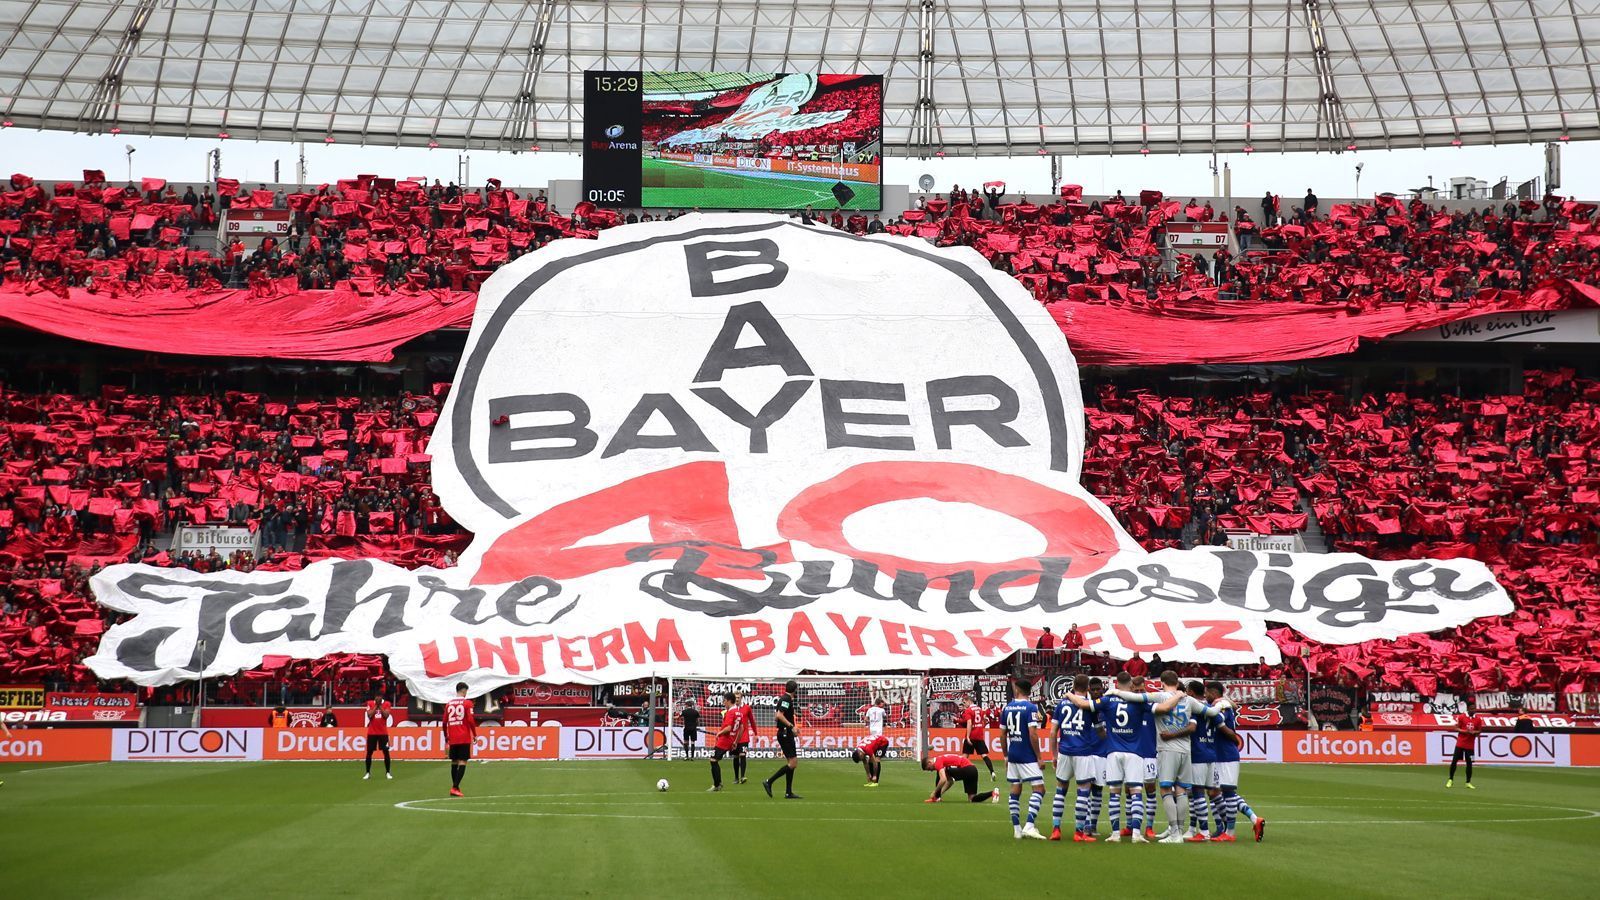 
                <strong>Bayer 04 Leverkusen</strong><br>
                Vereinshymne: "Leverkusen" (Dirk Maverick)
              